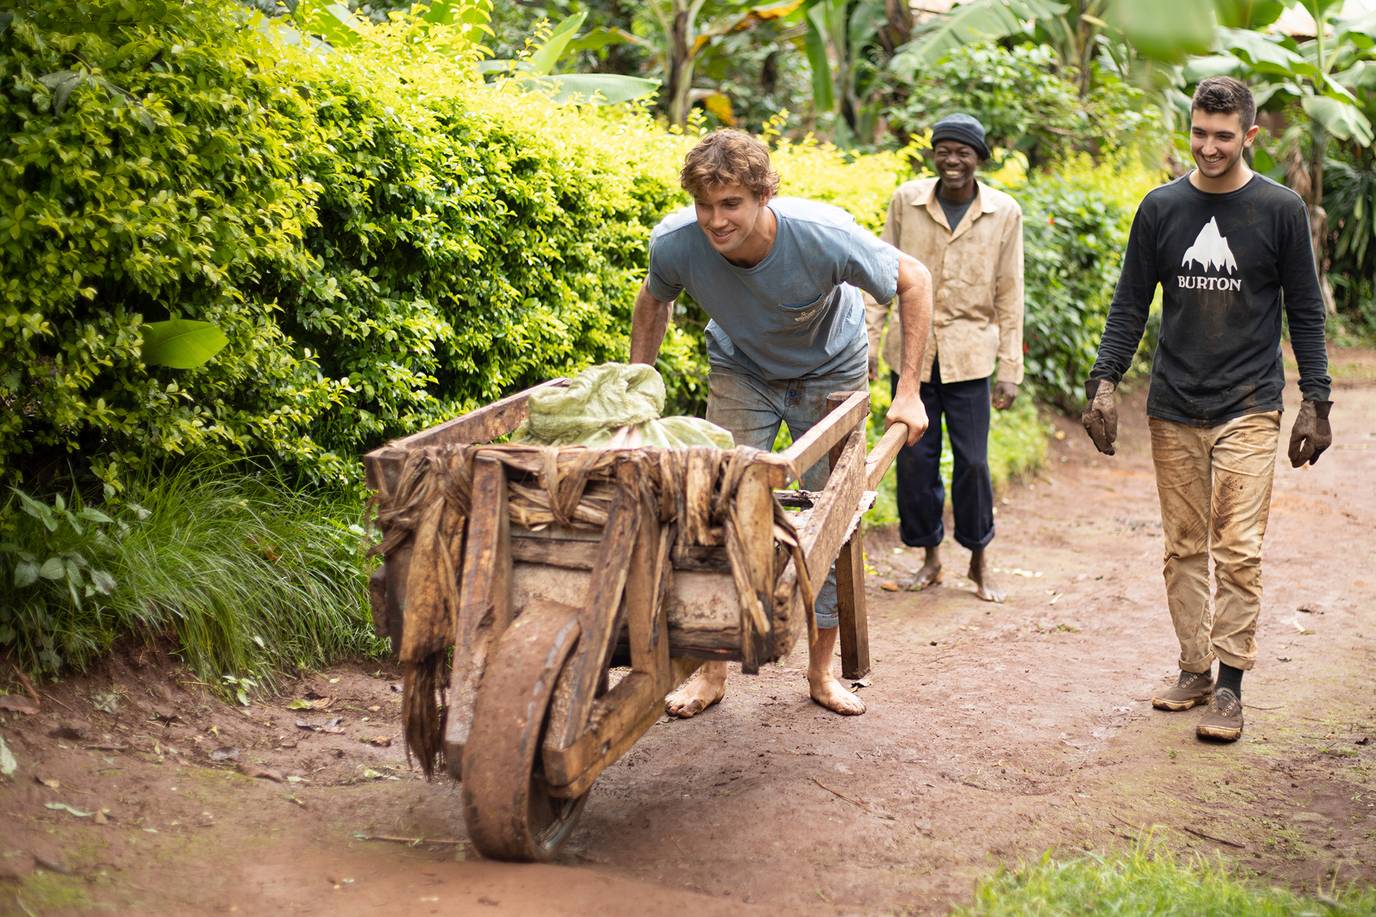 A college student pushing a wooden wheelbarrow barefoot along a dirt path.